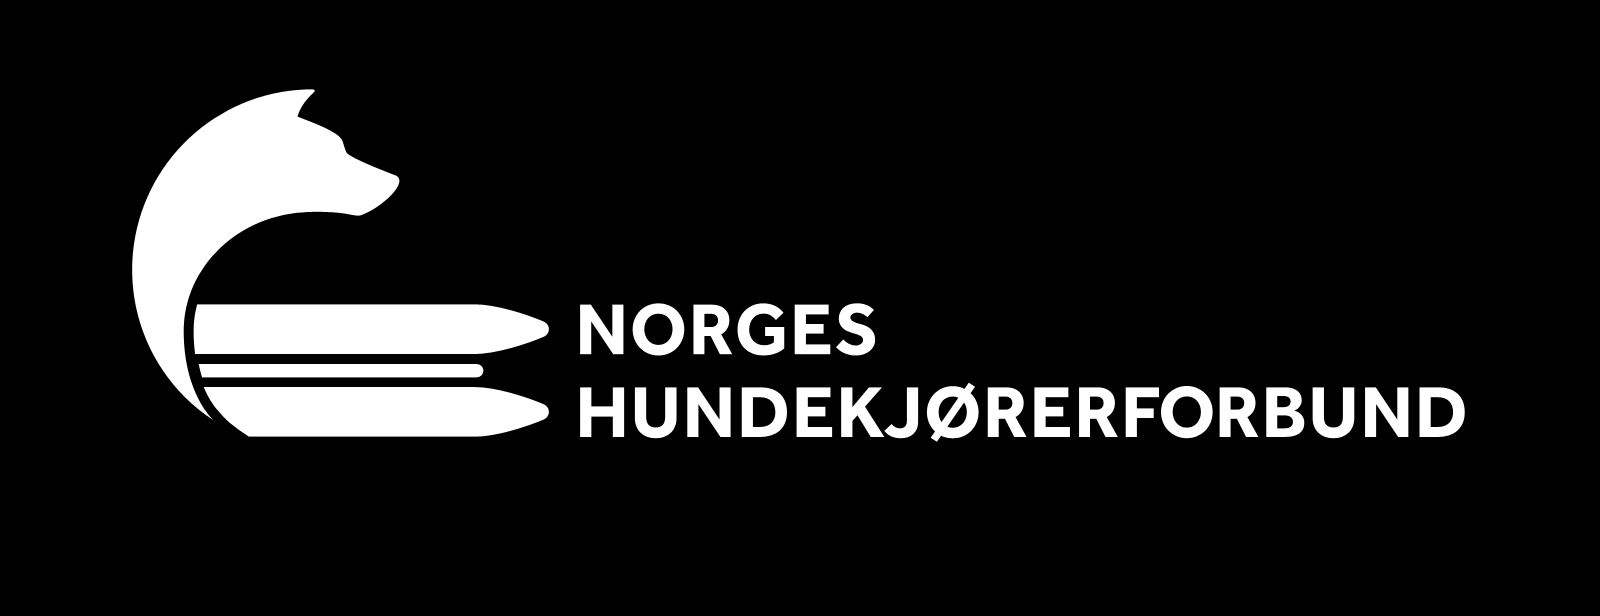 STRATEGIPLAN FOR NORGES HUNDEKJØRERFORBUND